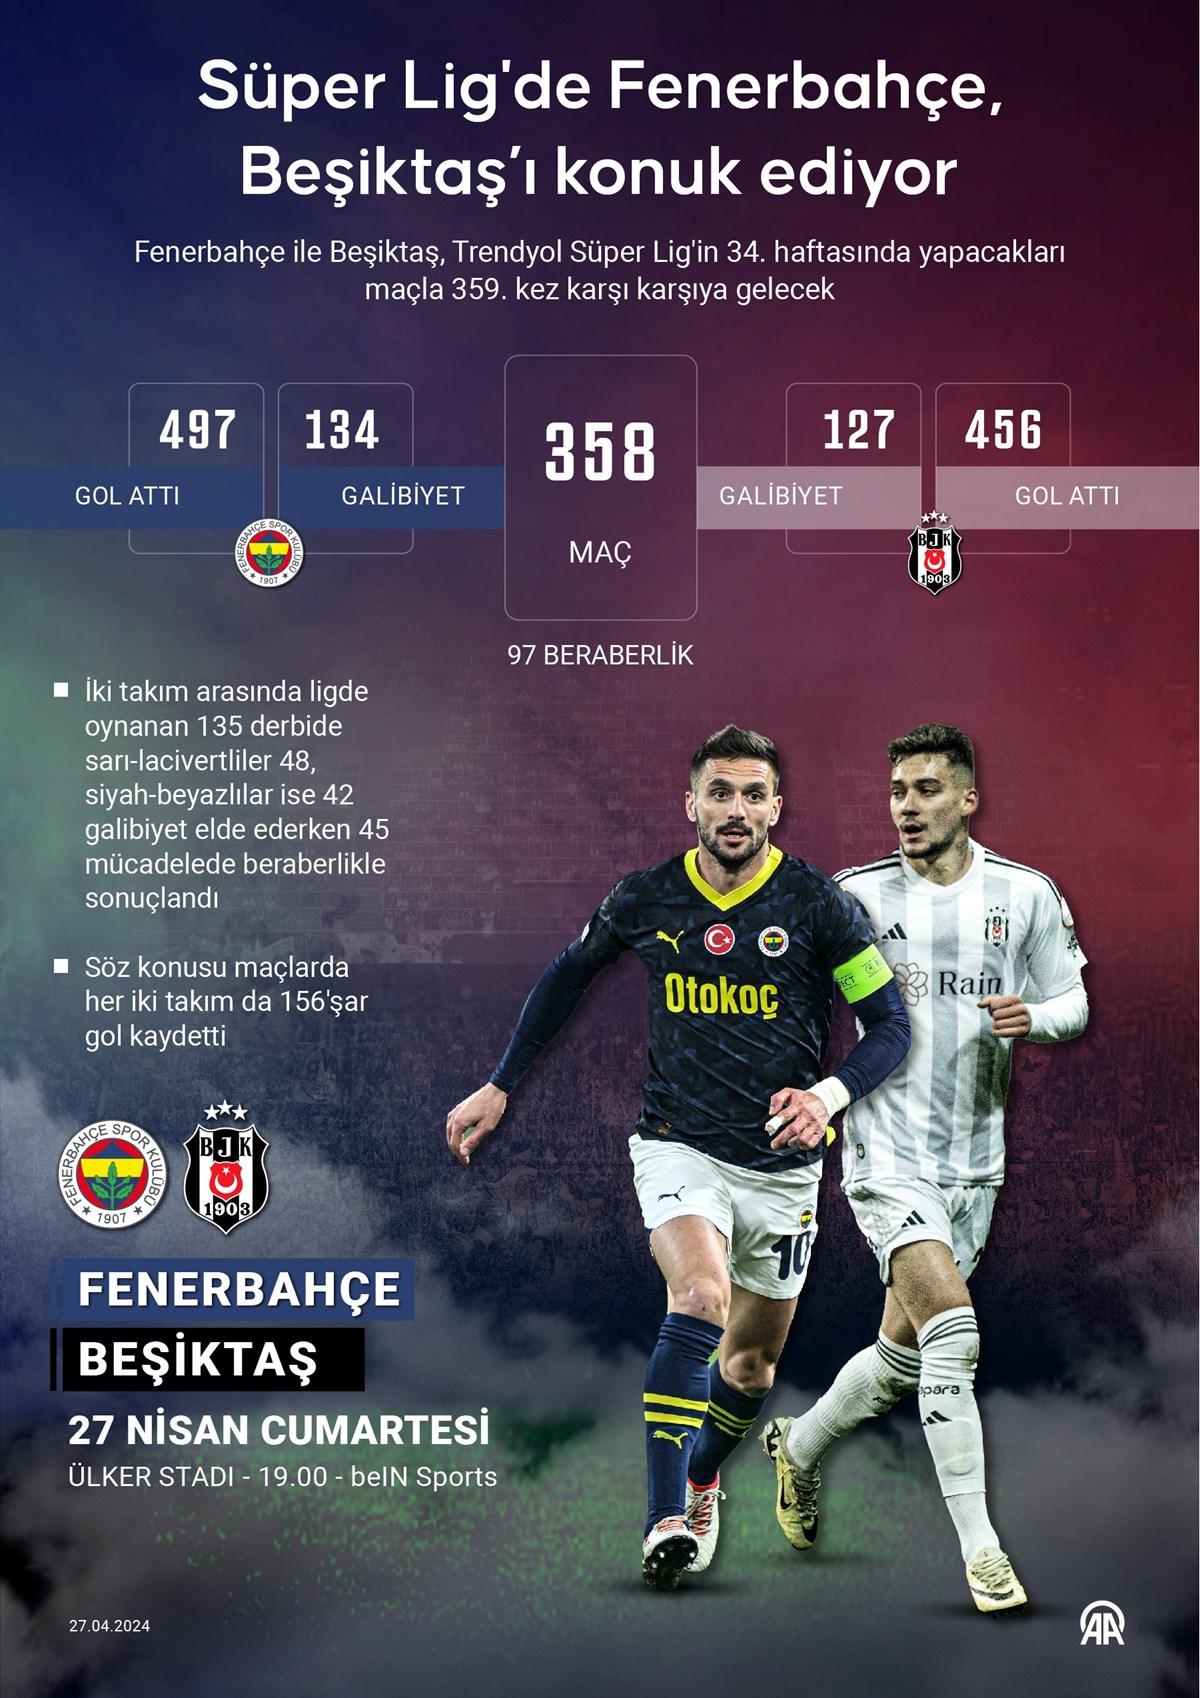 Derbinin 359. randevusunda Fenerbahçe, Beşiktaş'ı konuk ediyor